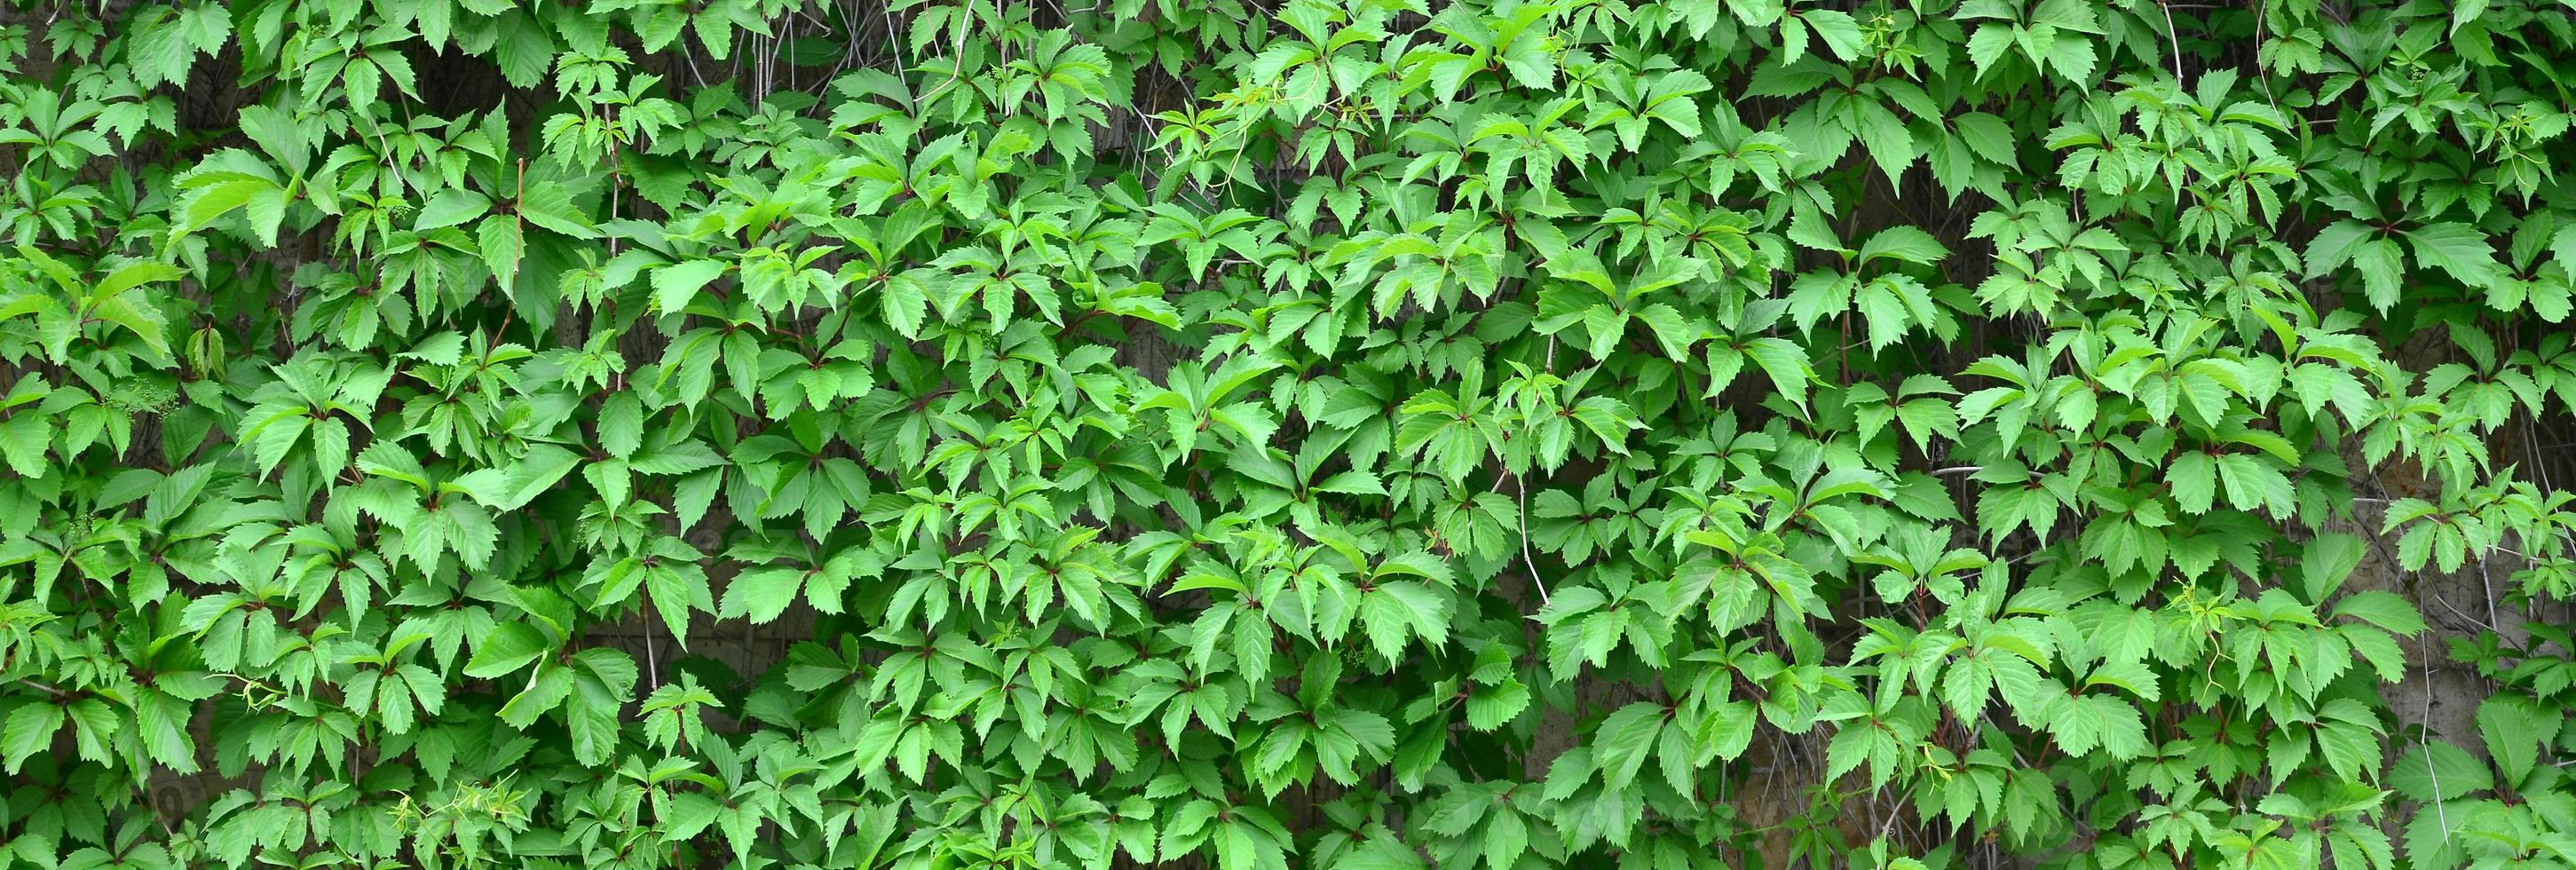 Grüner Efeu wächst entlang der beigen Wand aus bemalten Fliesen. Textur von dichtem Dickicht aus wildem Efeu foto